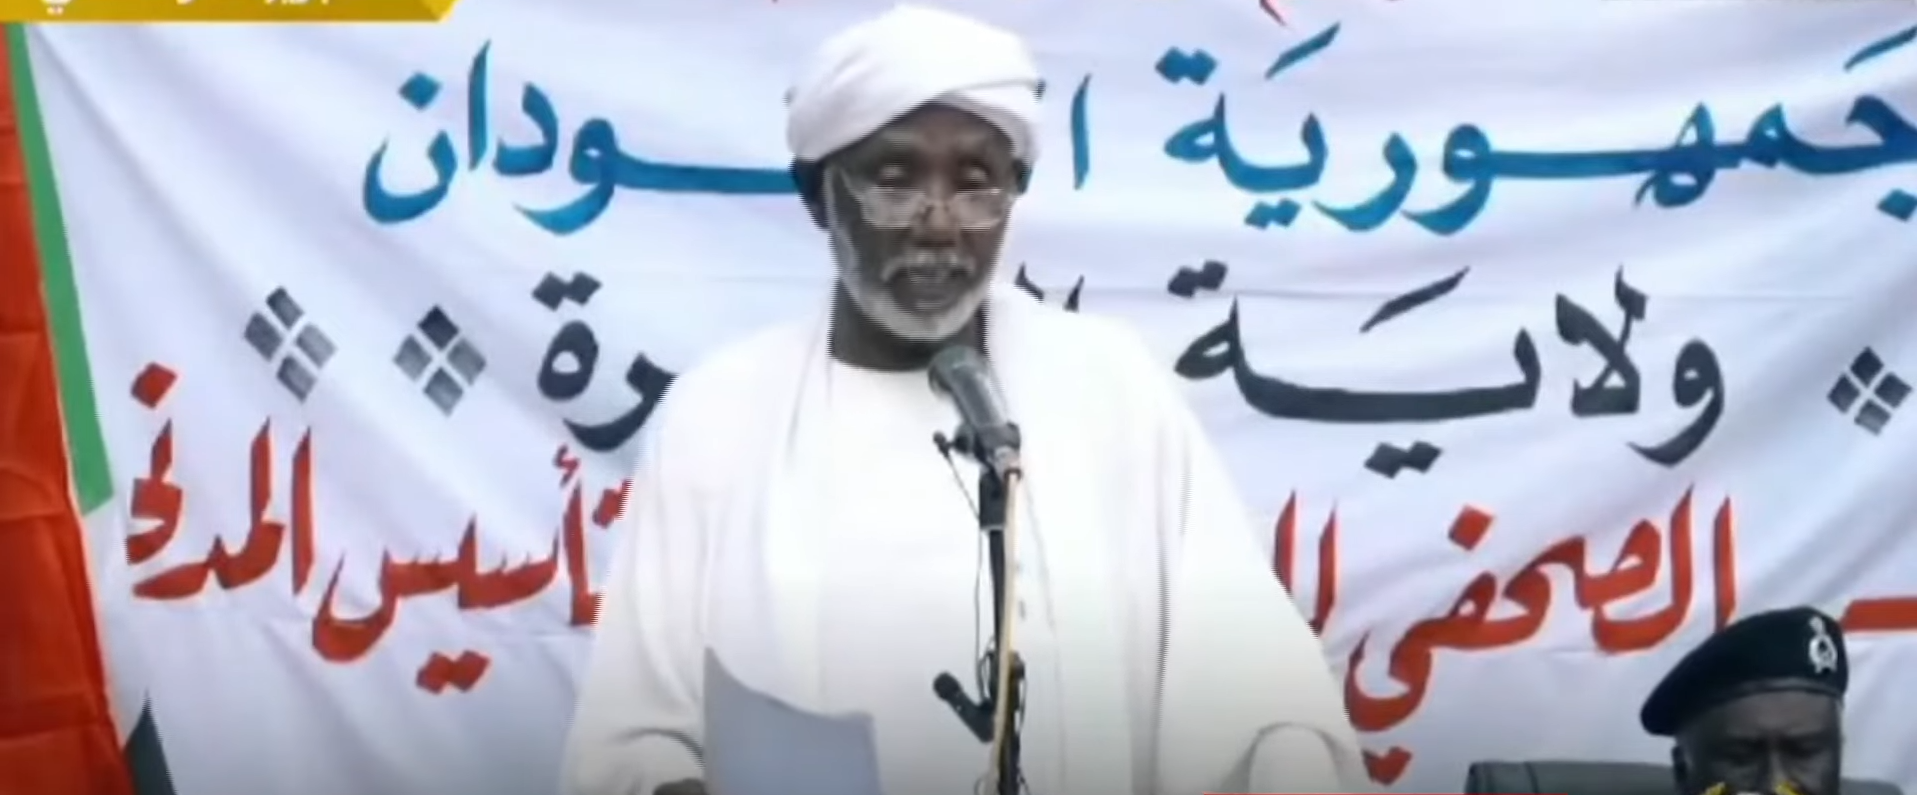 السودان.. الدعم السريع تؤسس إدارة مدنية بولاية الجزيرة حفاظاً على النظام العام